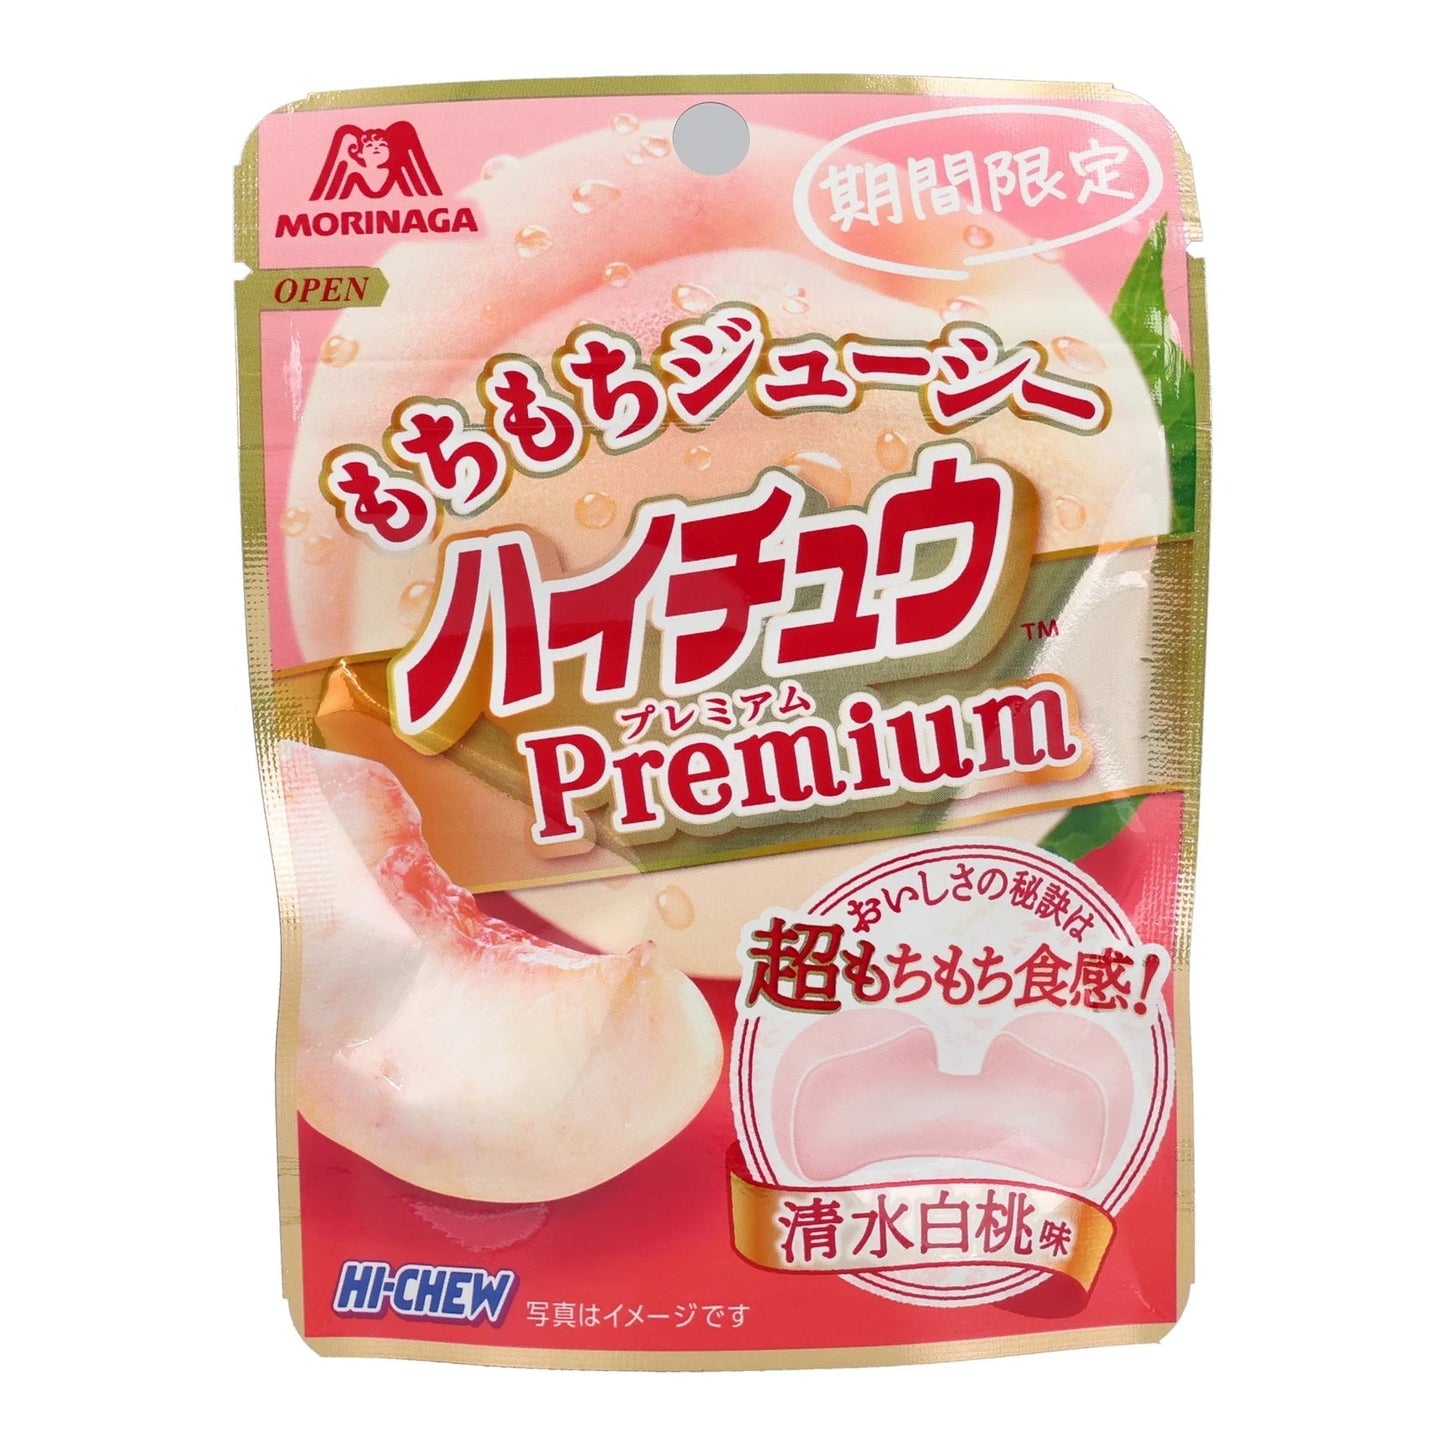 Hi-Chew Premium Peach (11g) (China) 4-Pack